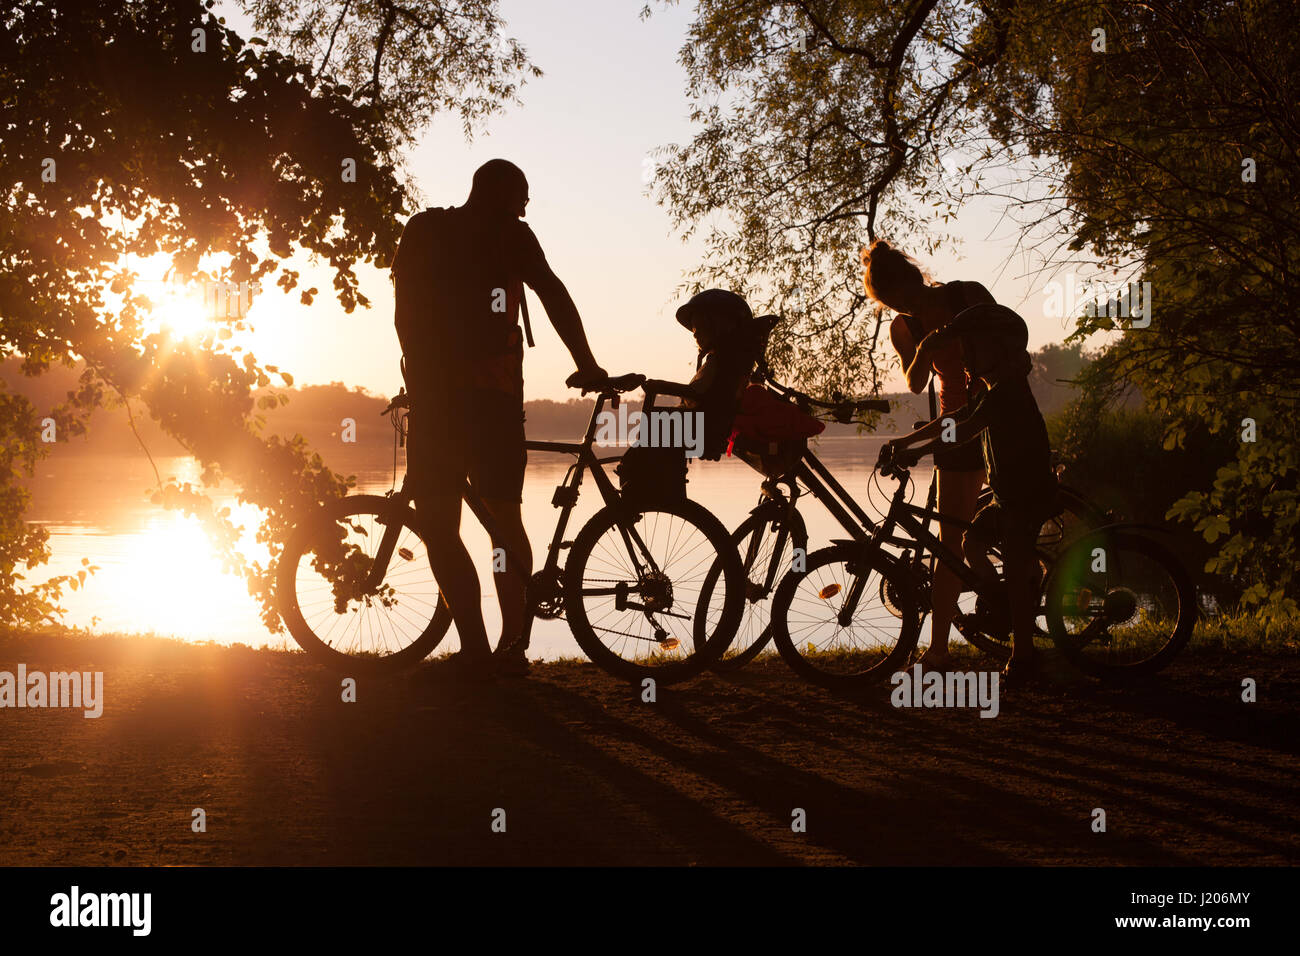 Family on bikes - lifestyle Stock Photo